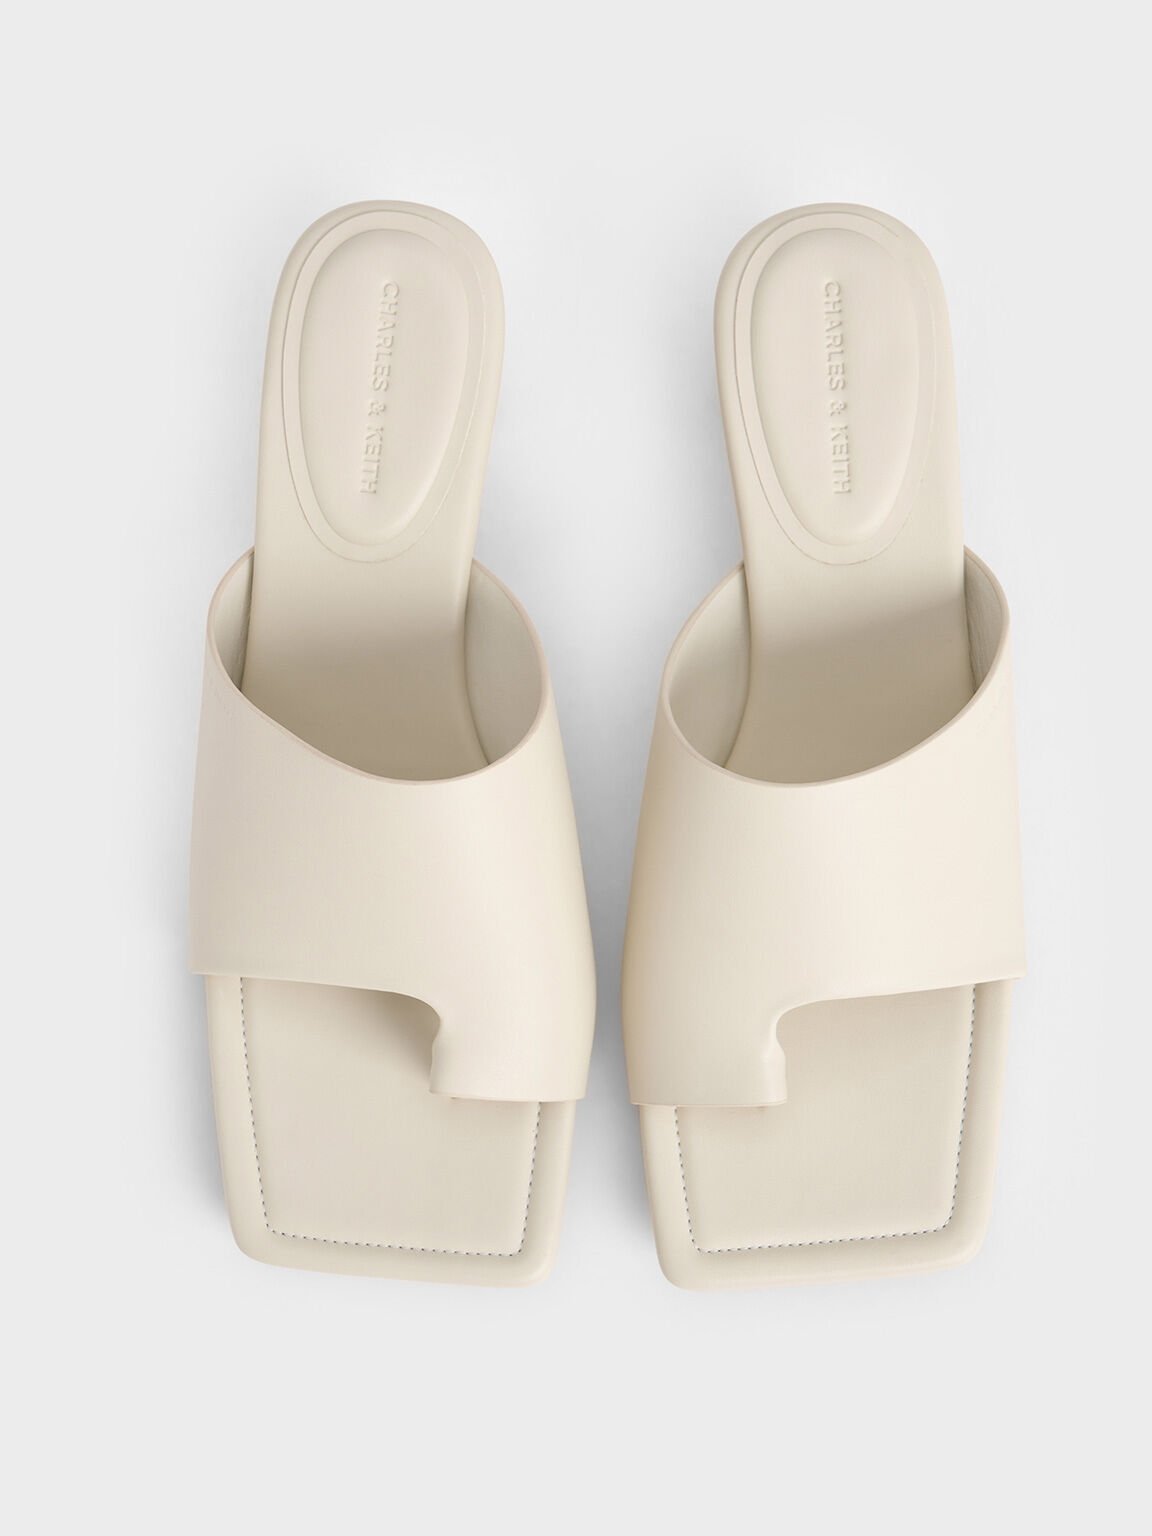 Asymmetric Square-Toe Toe-Ring Sandals, White, hi-res